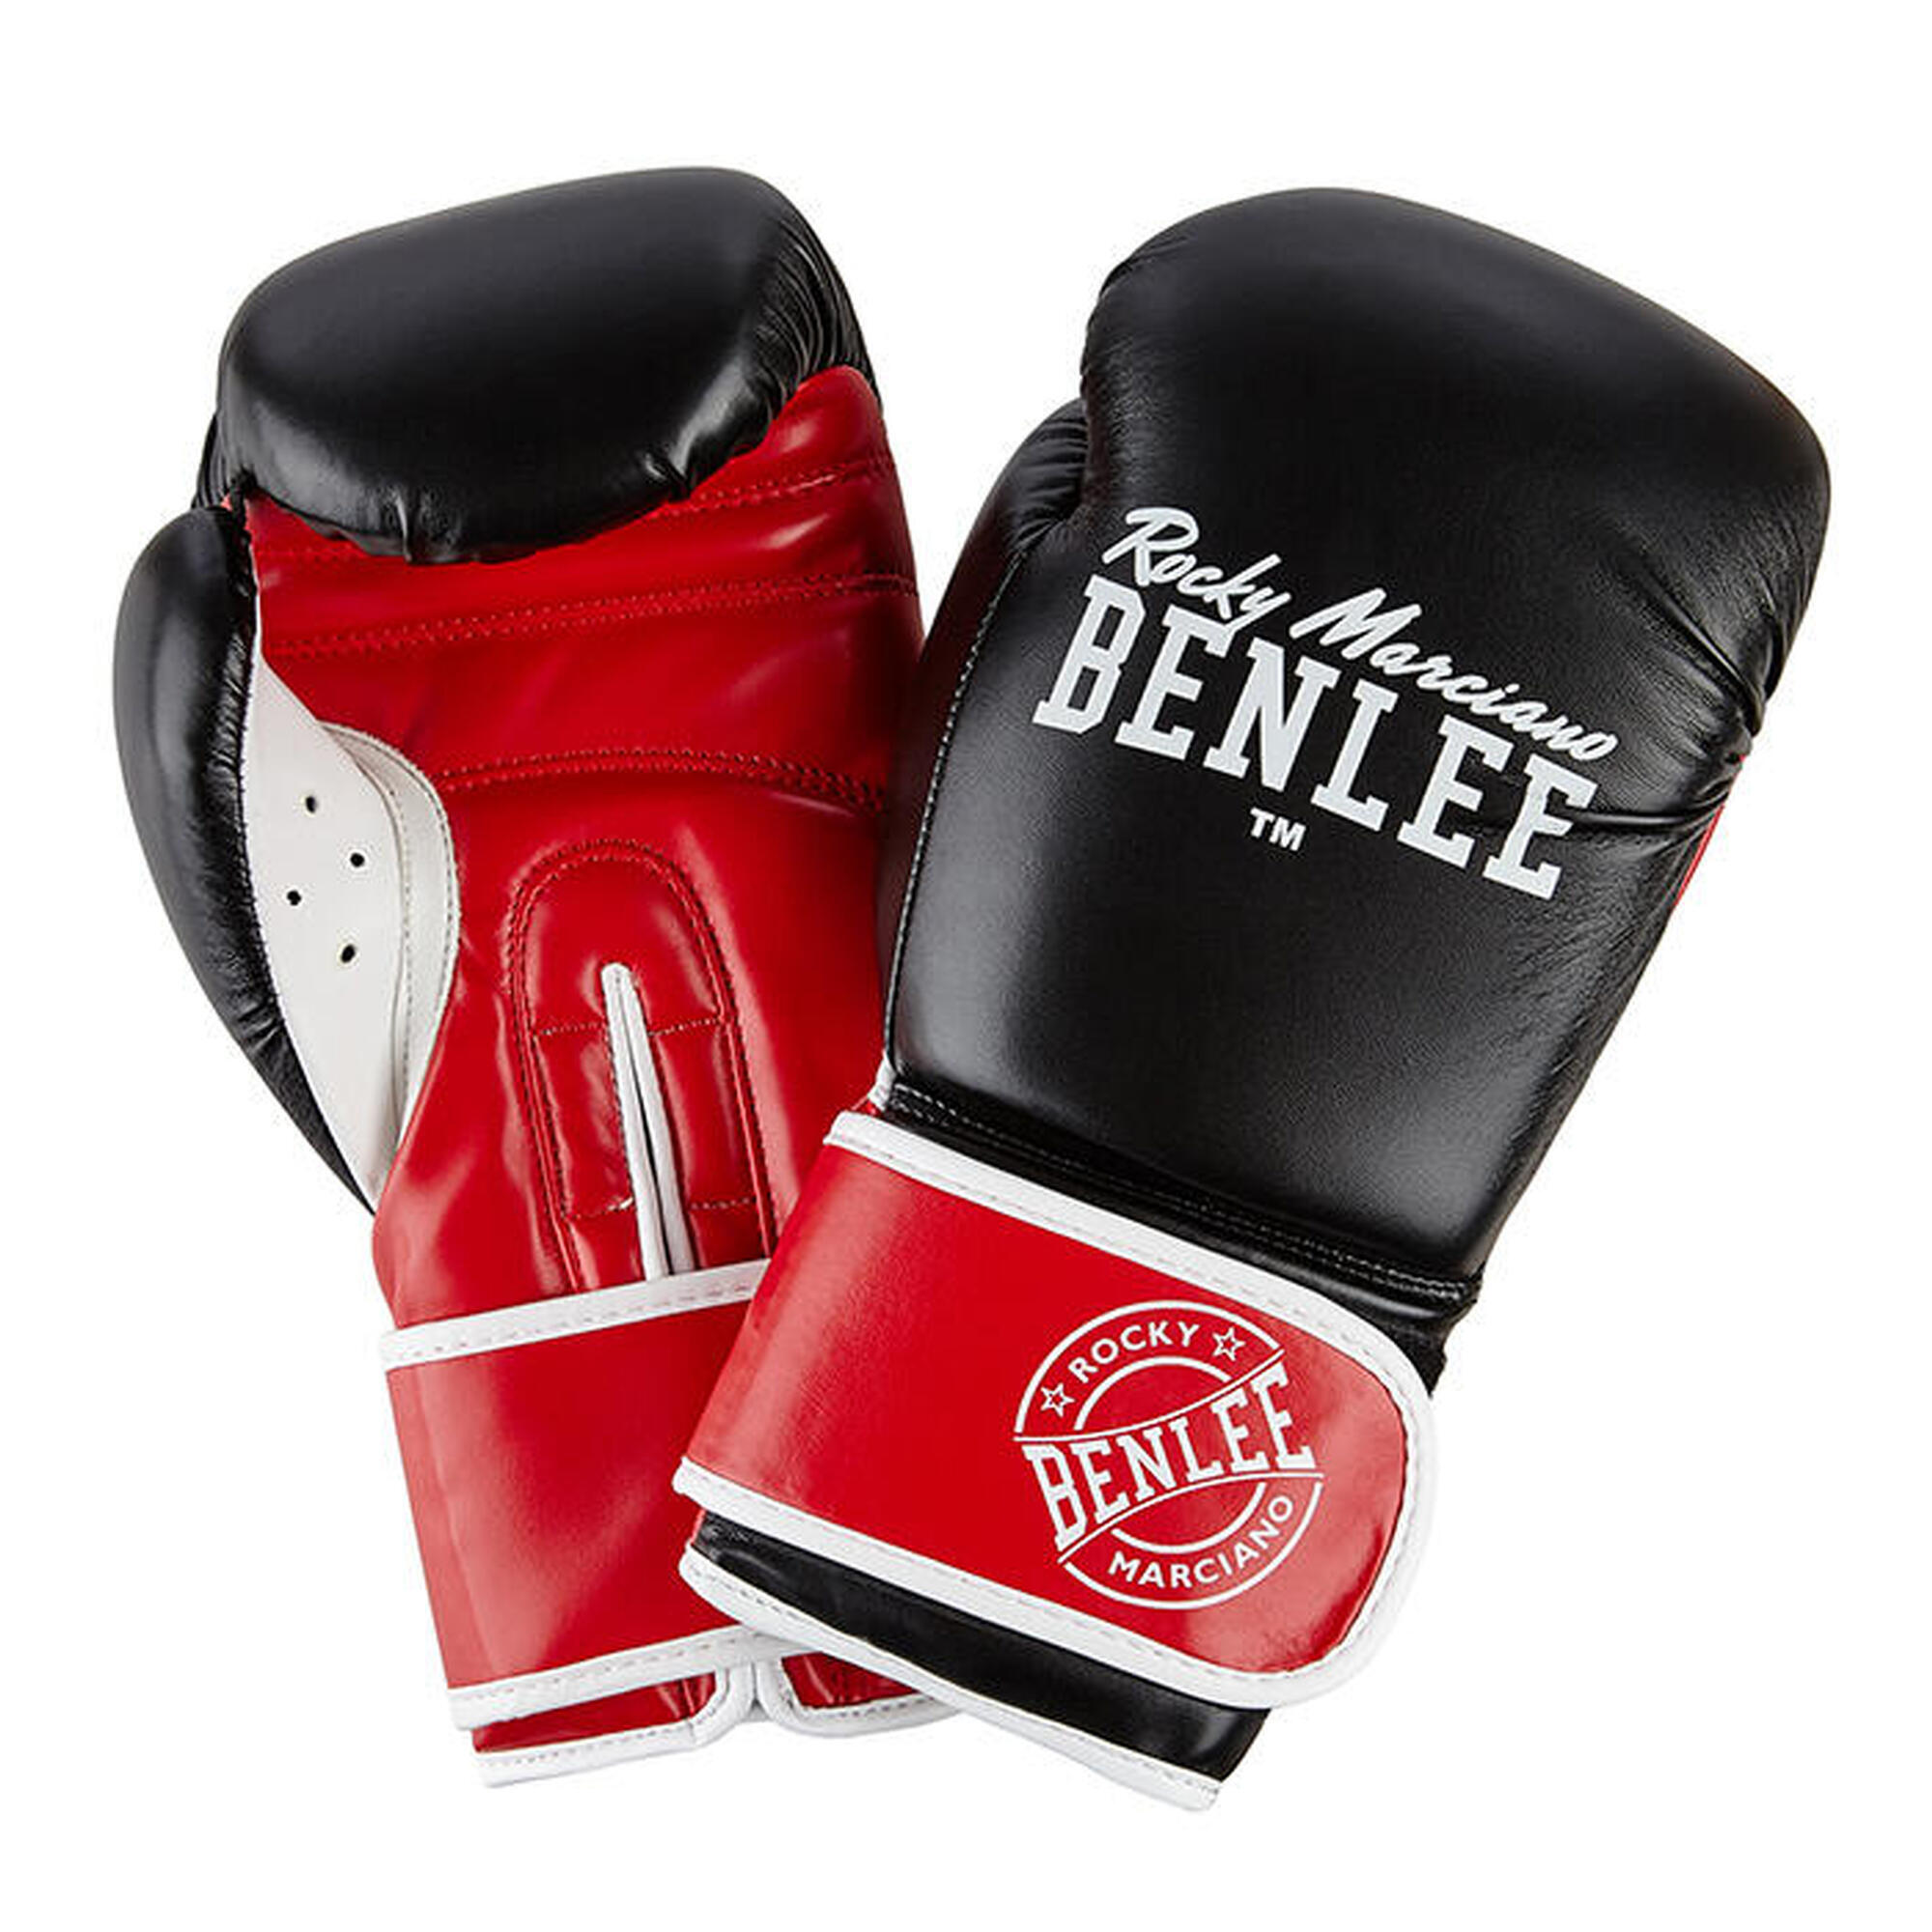 Rękawice bokserskie BenLee Carlos